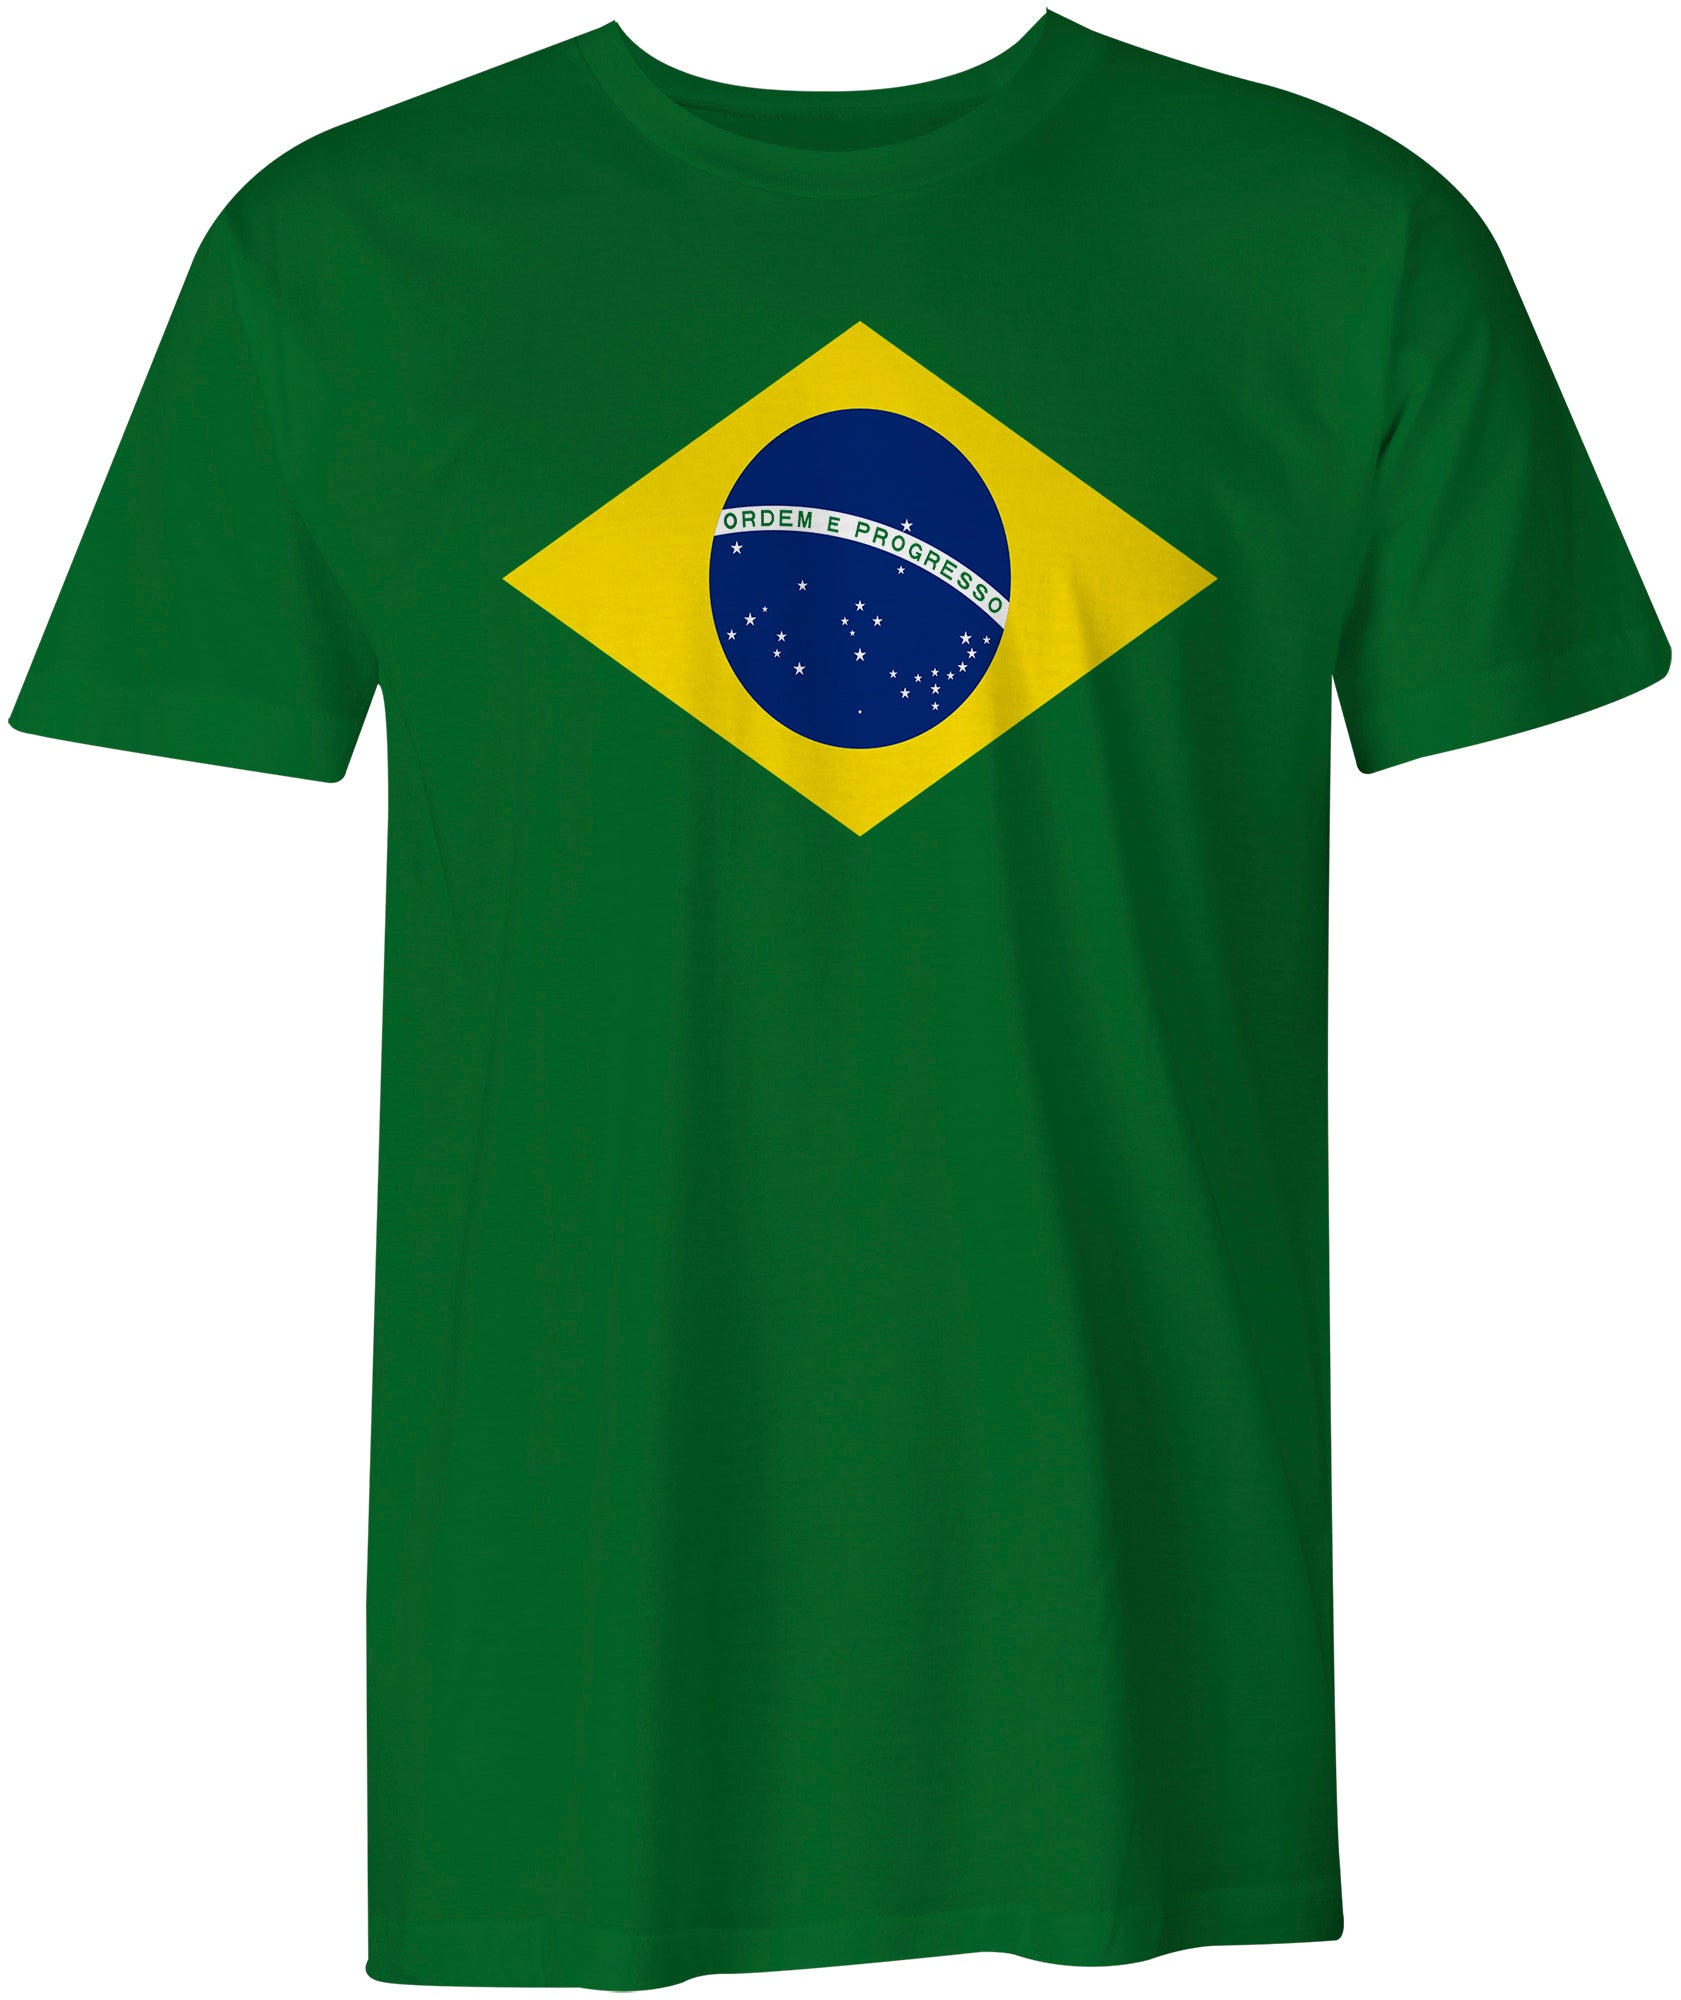 Giant Flag of Brasil Brazil Brazilian Bandeira do Brasil